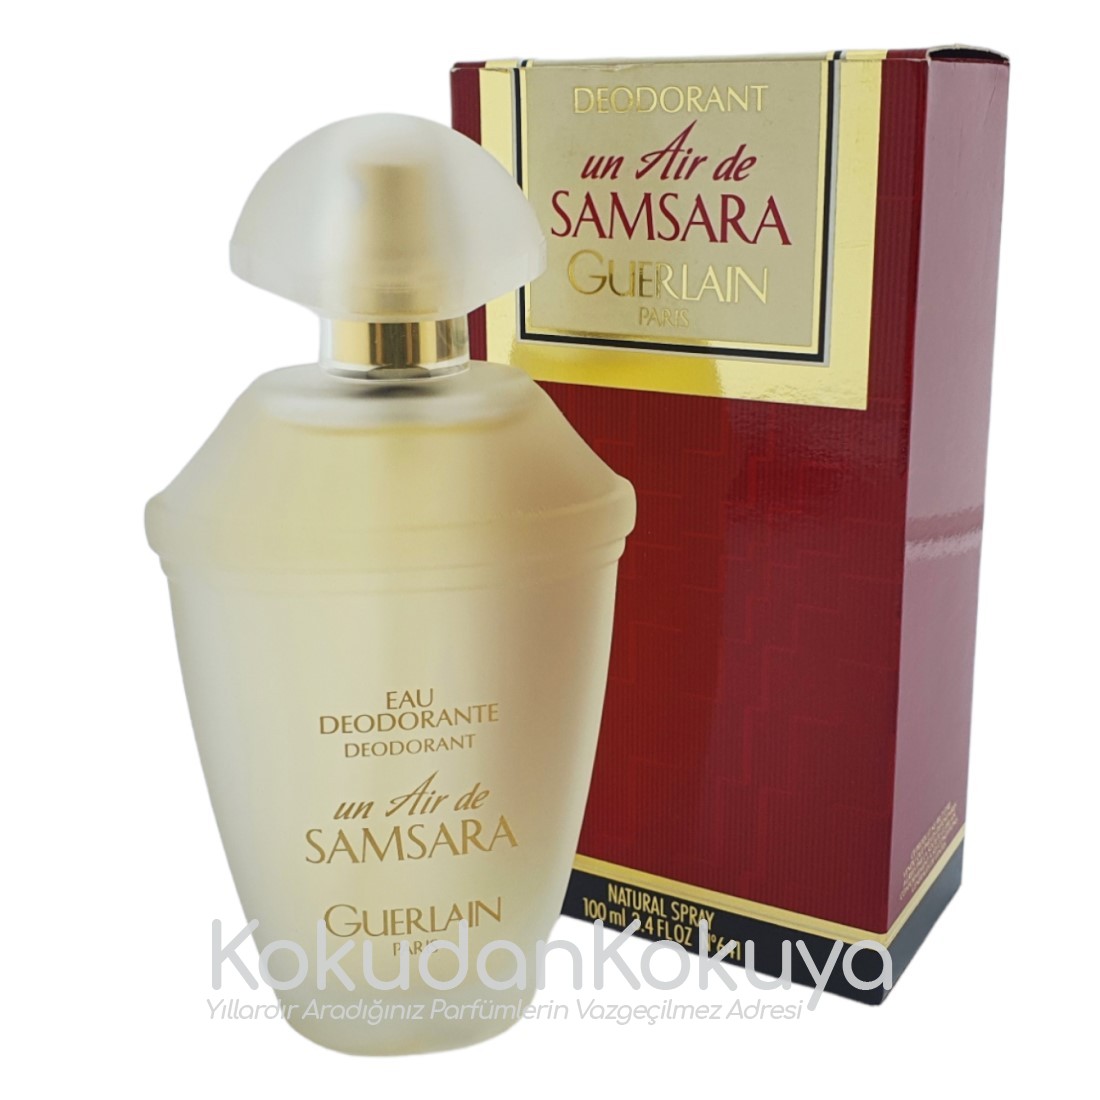 GUERLAIN Un Air De Samsara (Vintage) Deodorant Kadın 100ml Deodorant Spray (Cam) Sprey 